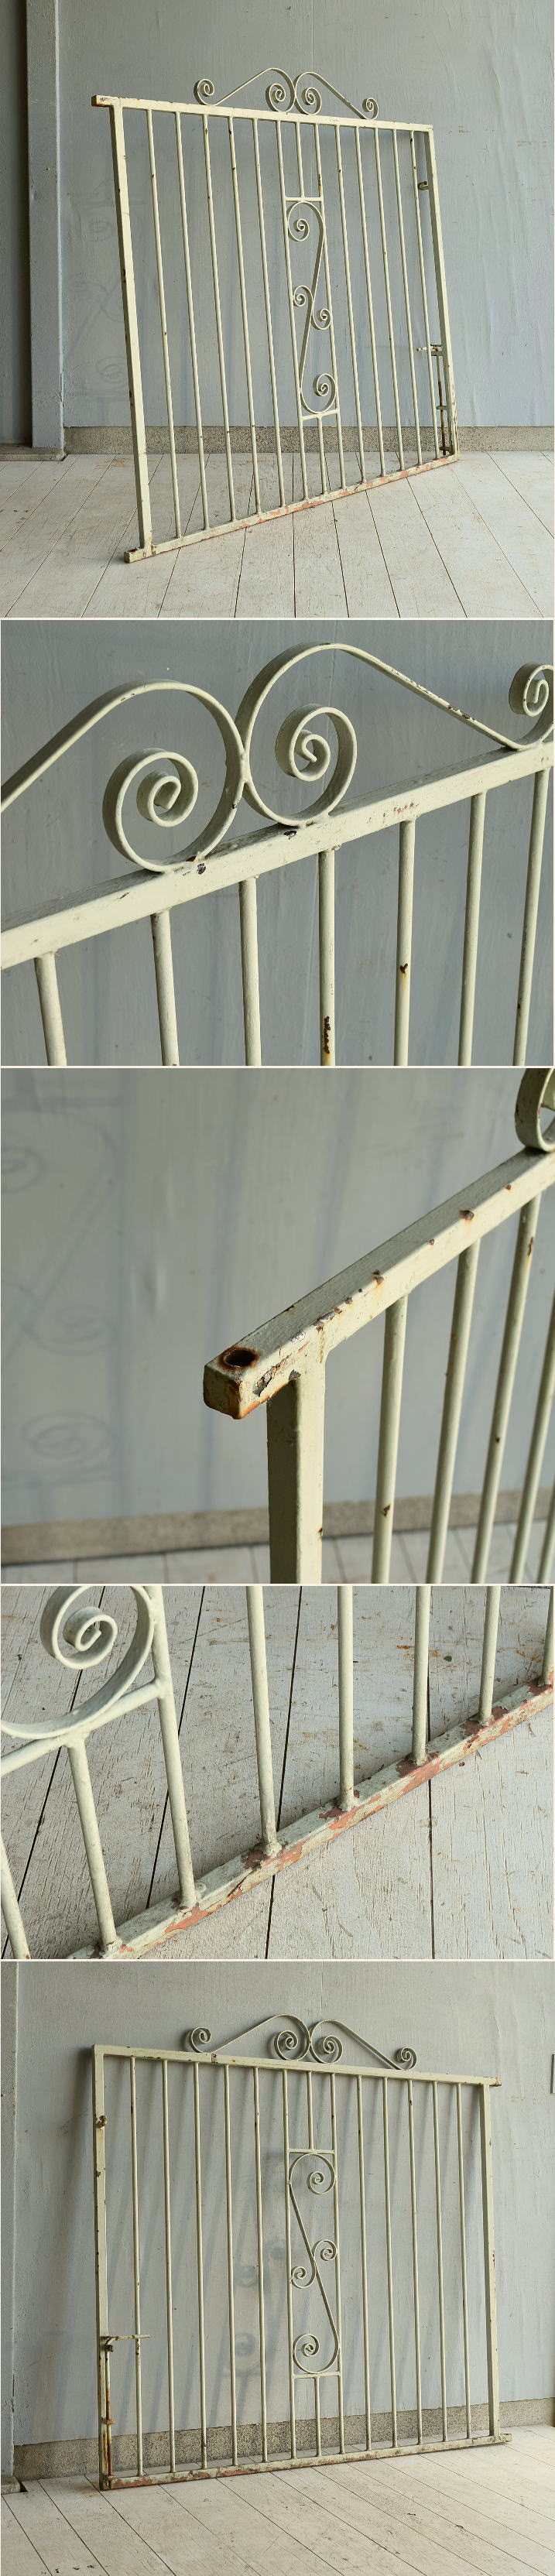 イギリス アンティーク アイアンフェンス ゲート柵 ガーデニング 10059